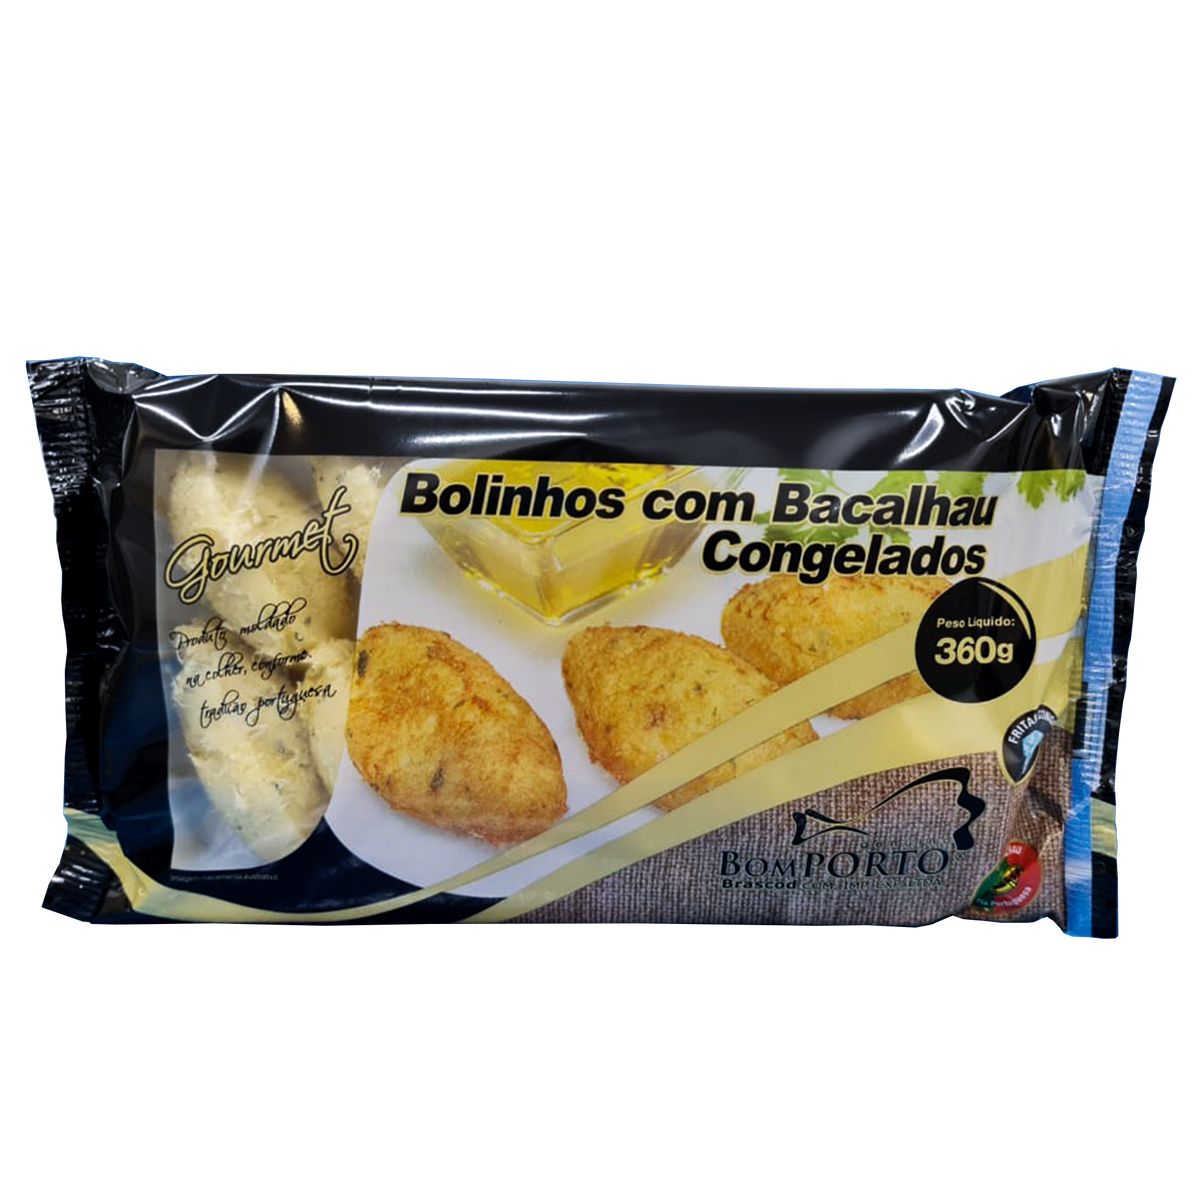 Bolinhos com Bacalhau Bom Porto Gourmet Congelados 360g image number 0